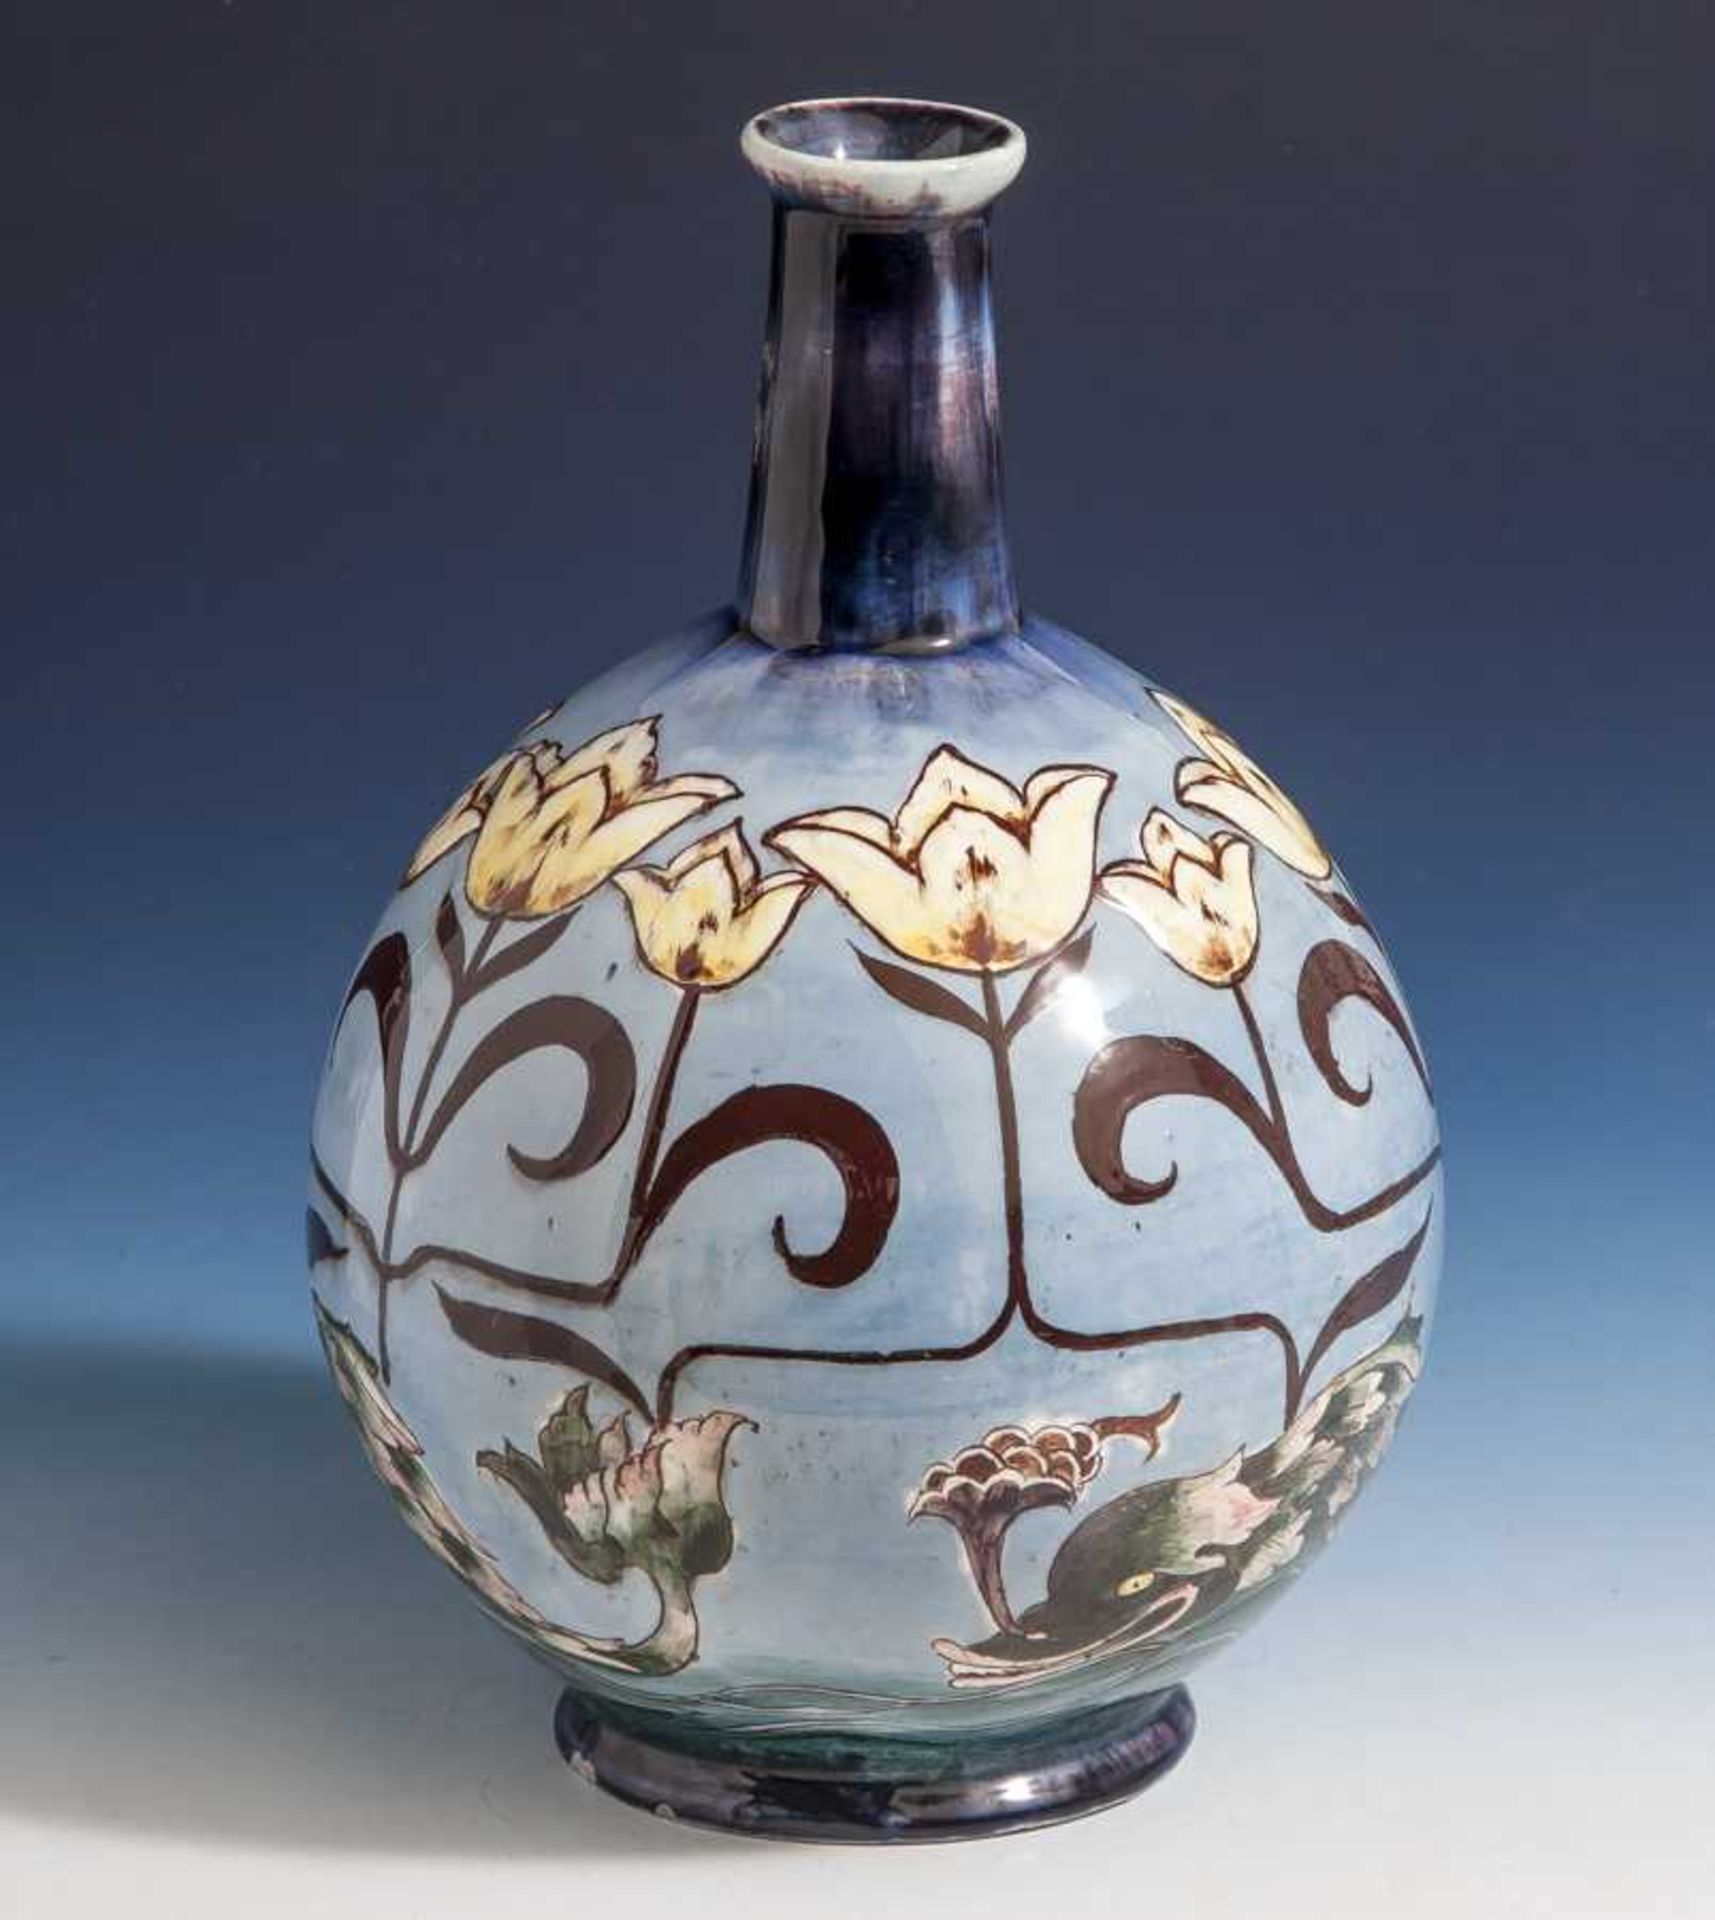 Jugendstilvase, Keramik, kugelförmiger Gefäßkörper mit kleinem ausgestelltem Standring,leicht